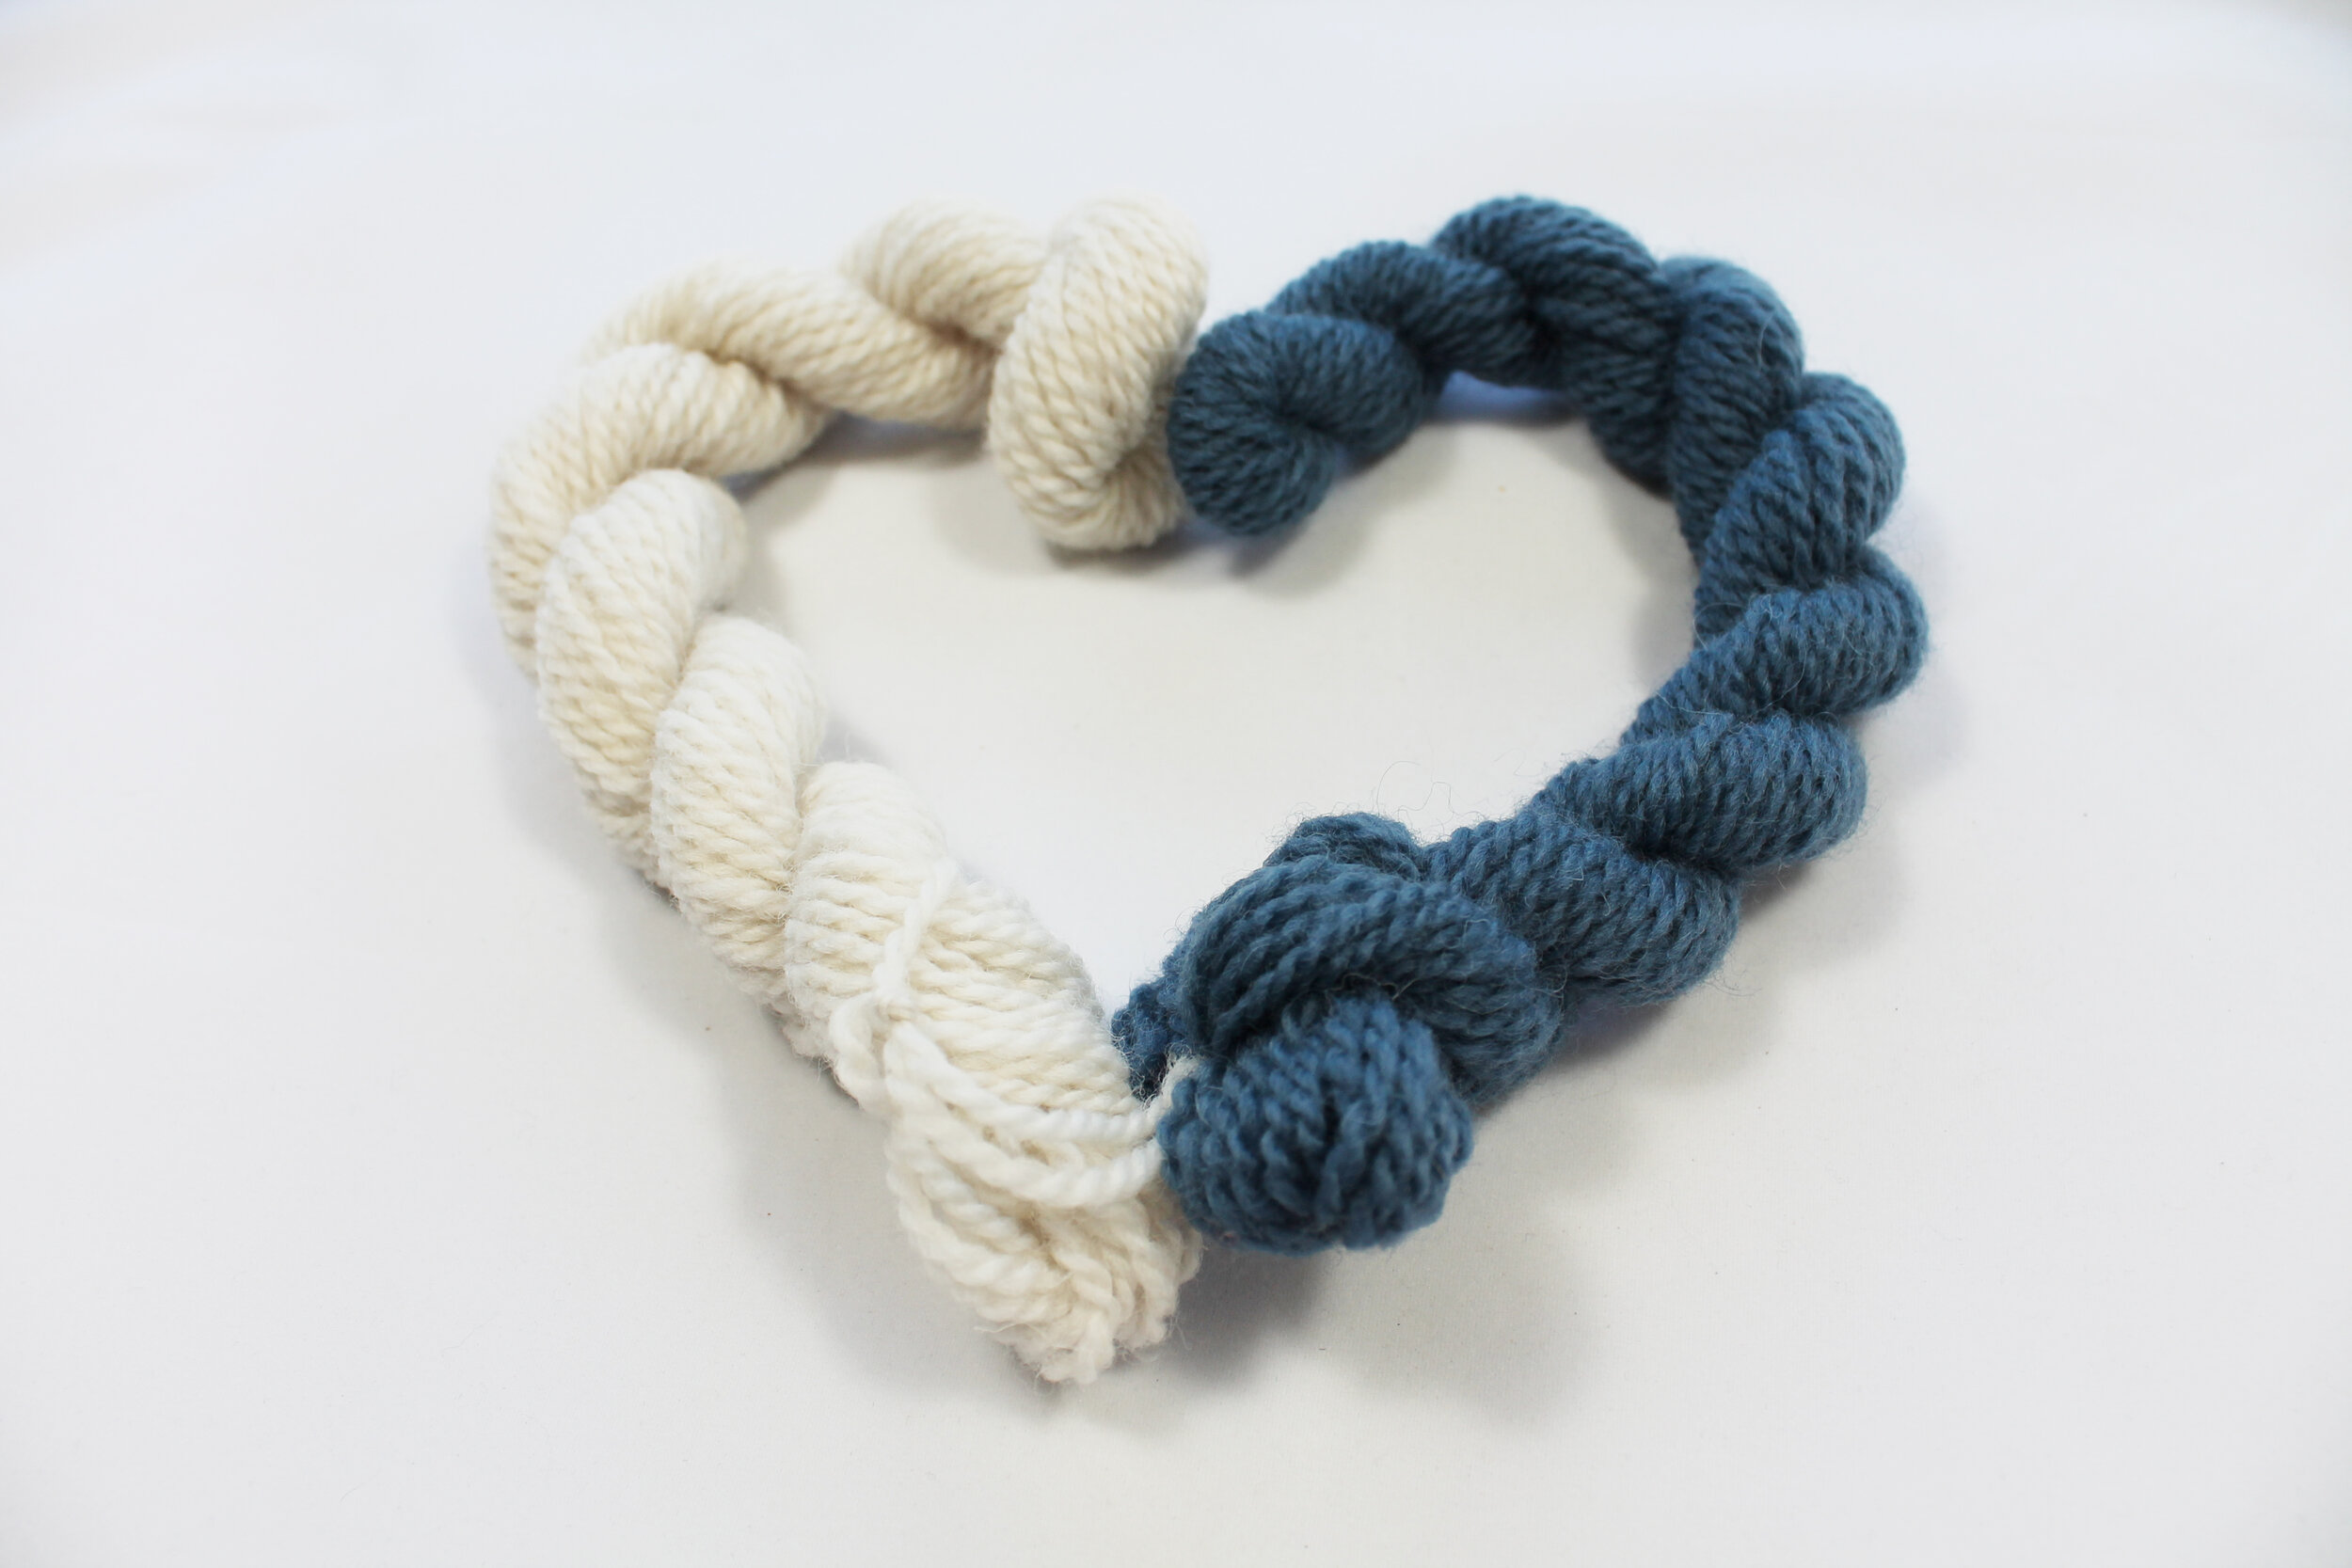 Coconut knitting yarn heart